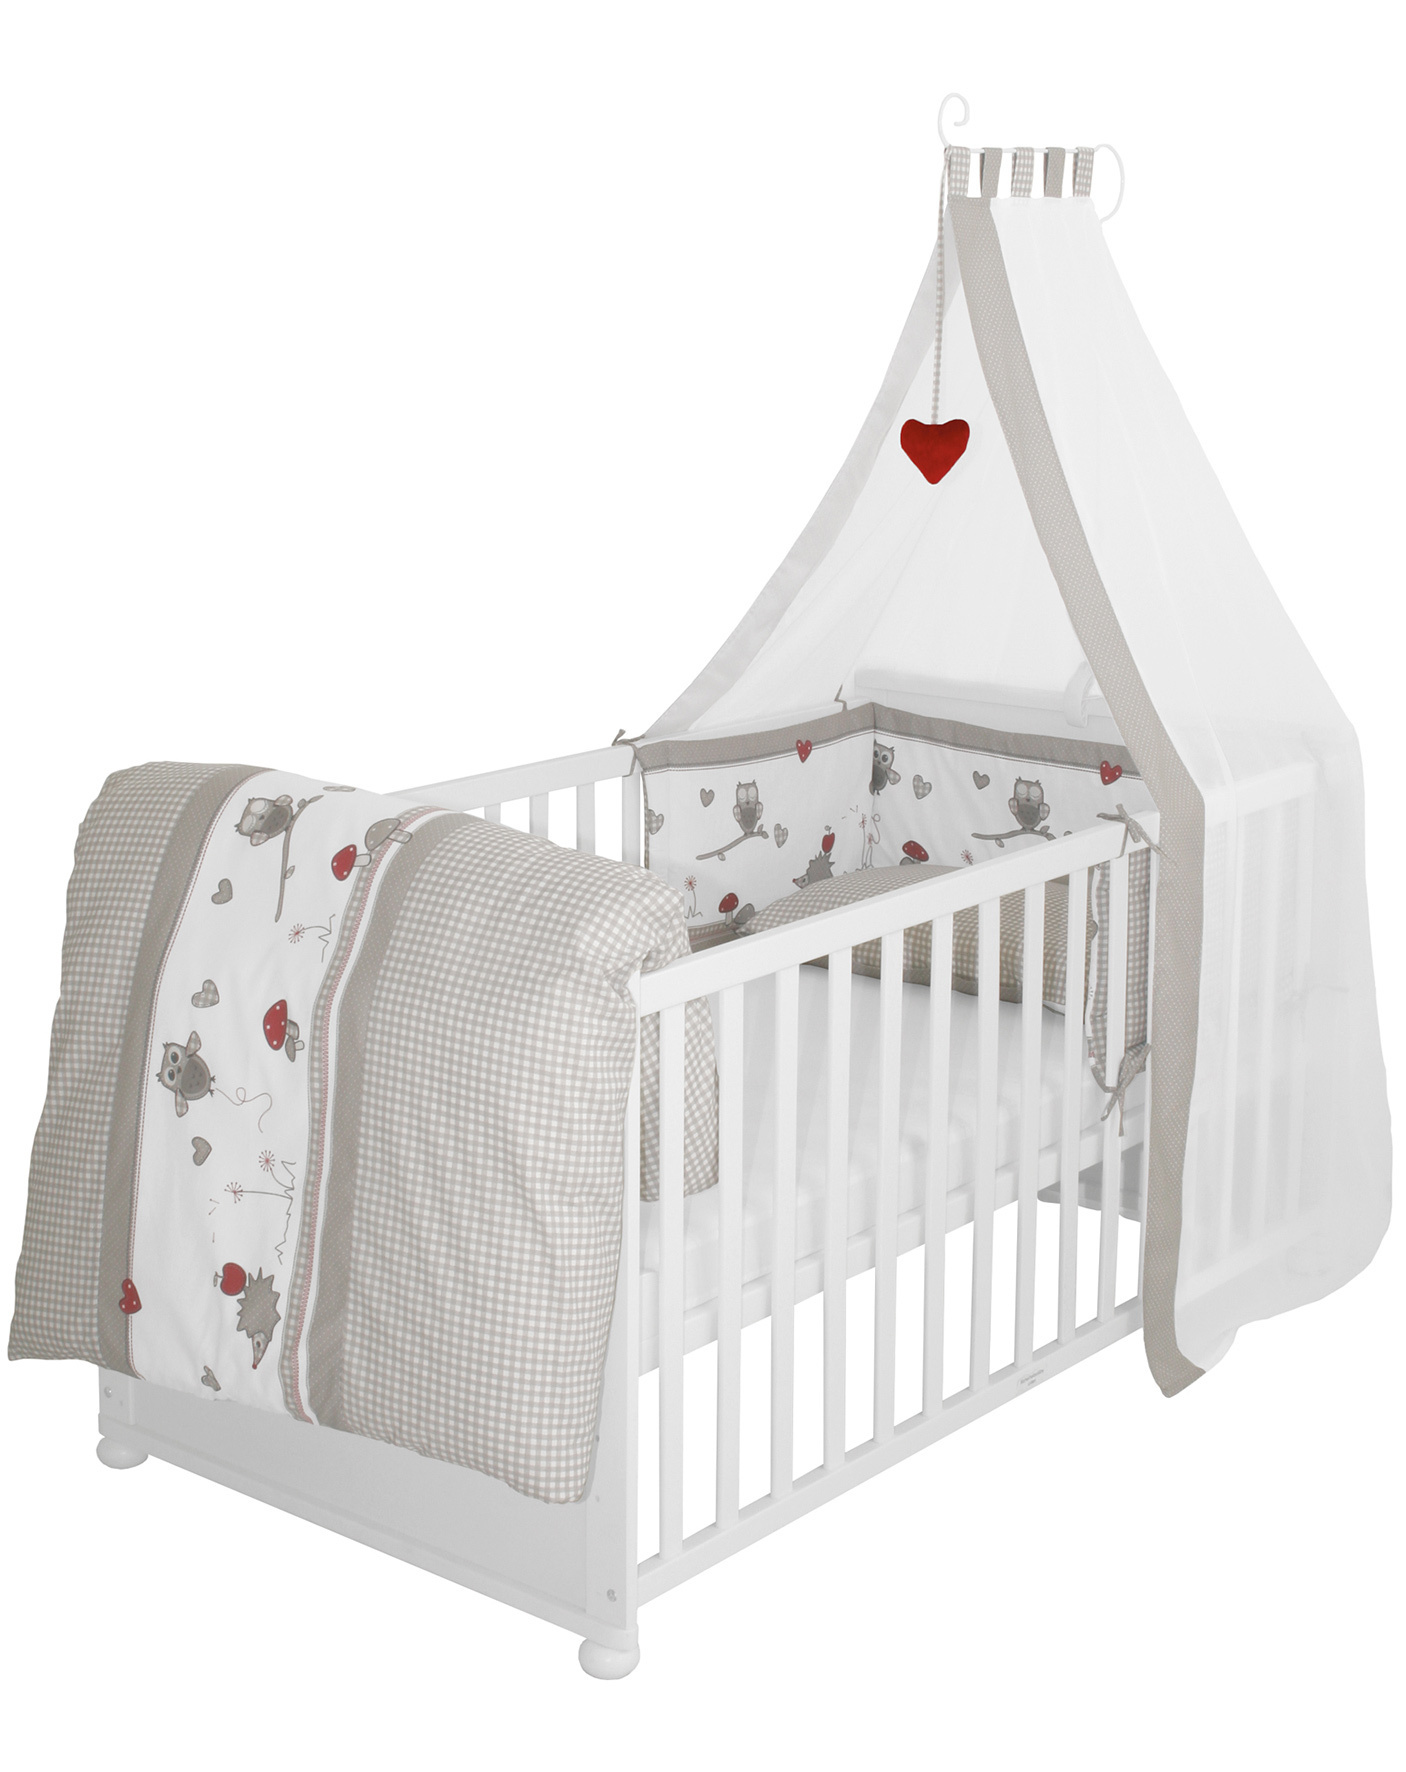 Made in France Kinderbettwäsche Set 75 x 100 cm und Kinderkissen 40 x 60 cm für Babybett 60x120 cm 18 Monate und mehr Bettdecke für Babybett Zertifiziert chemikalienfrei 